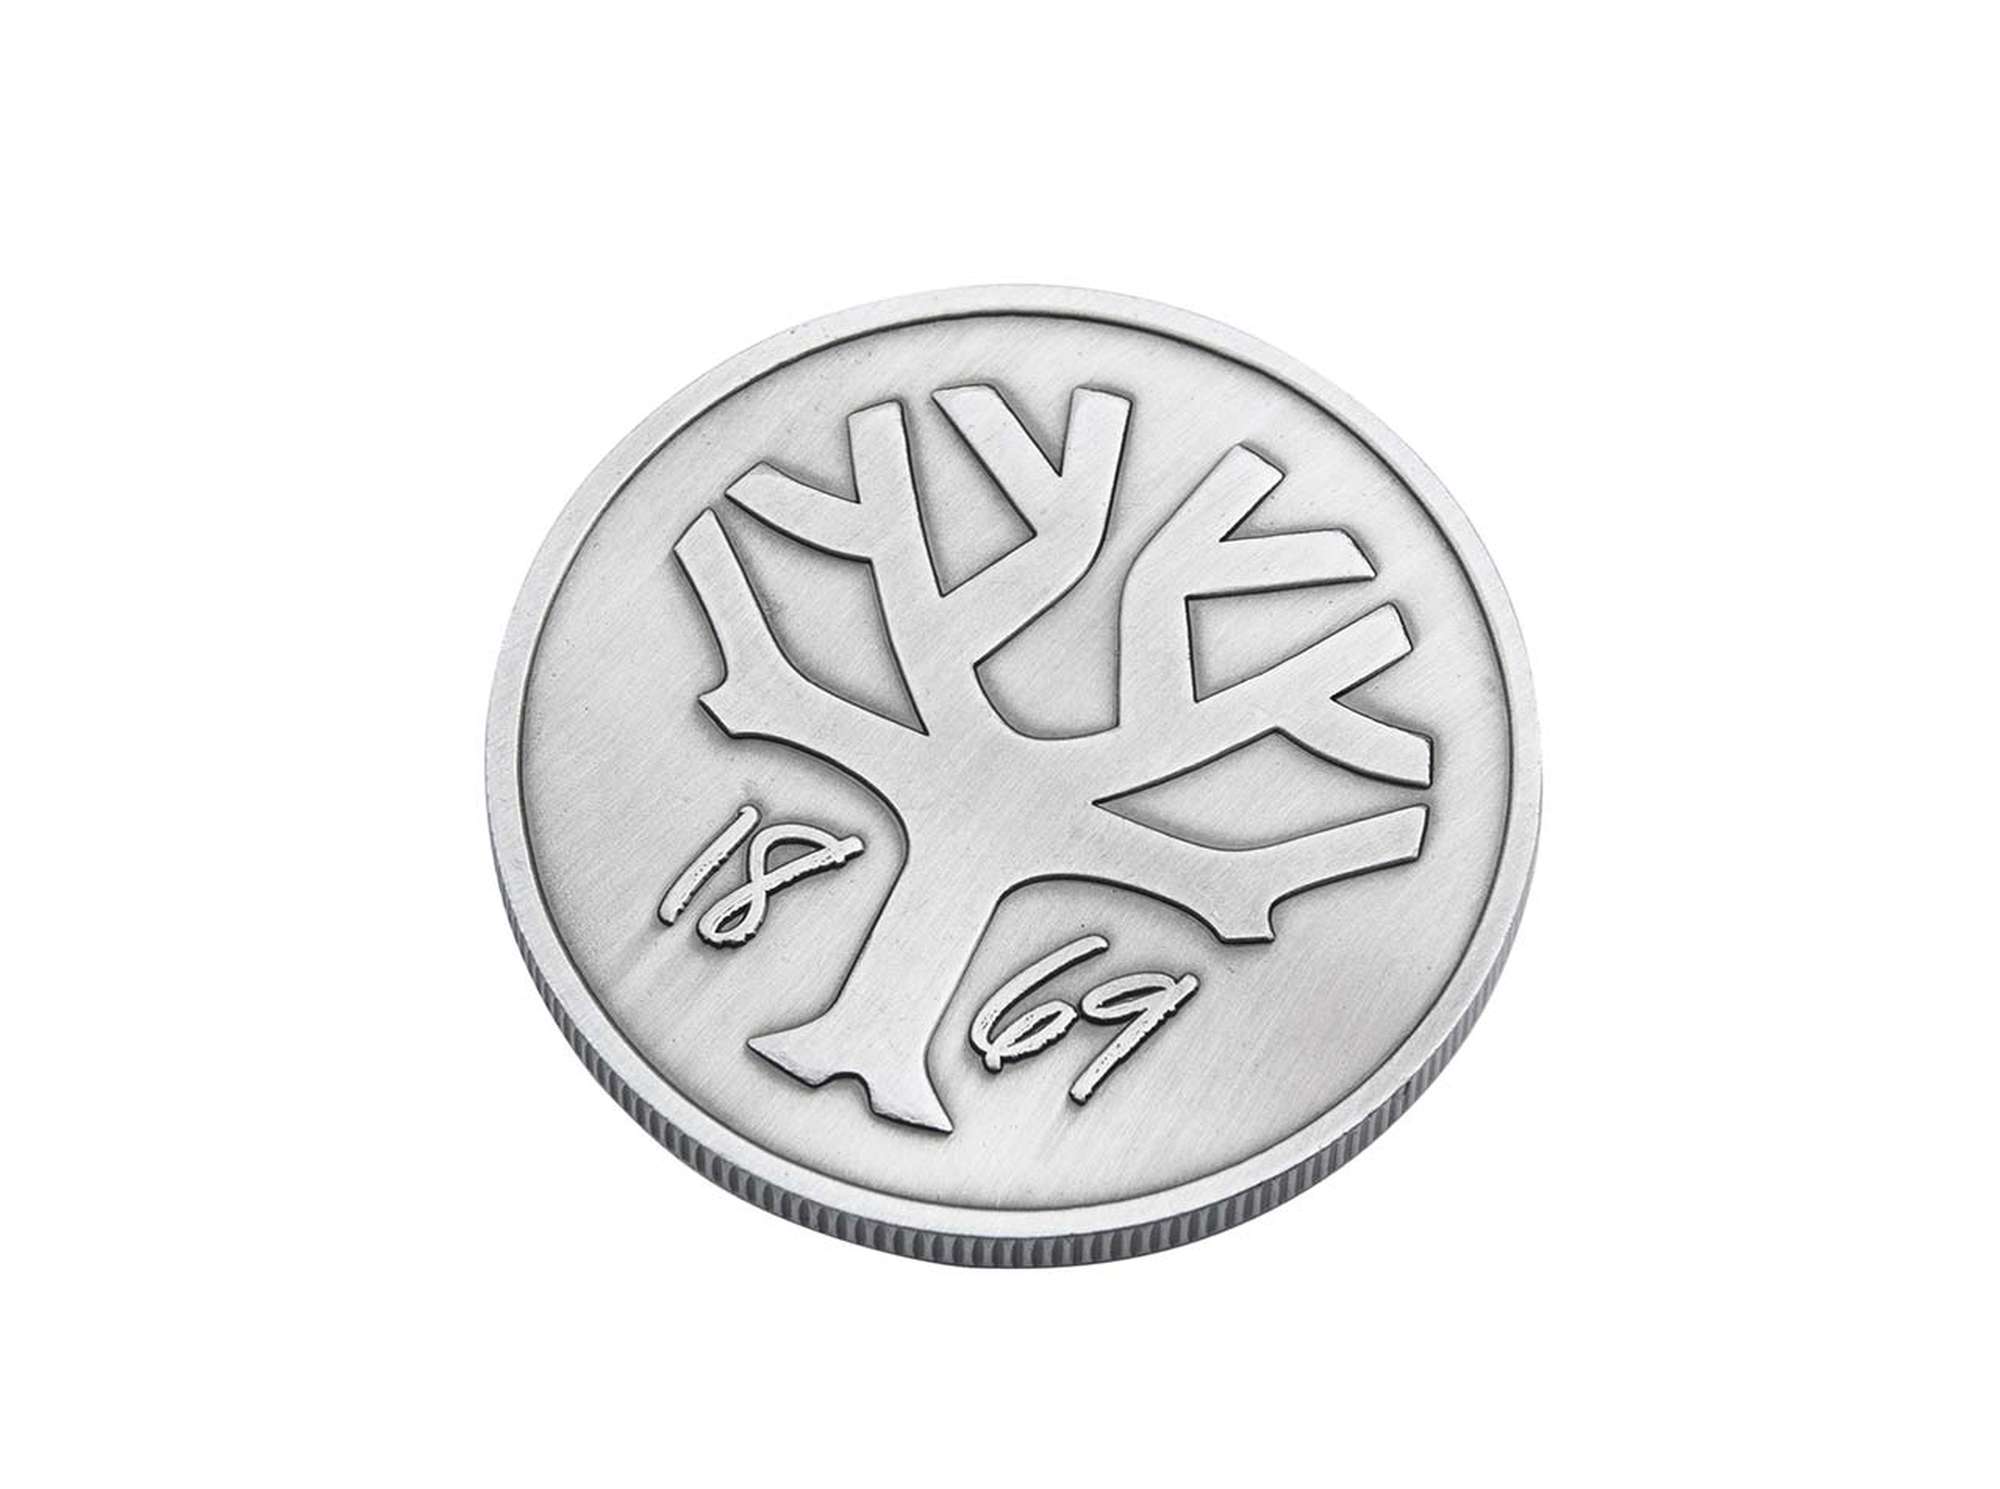 Böker Coin